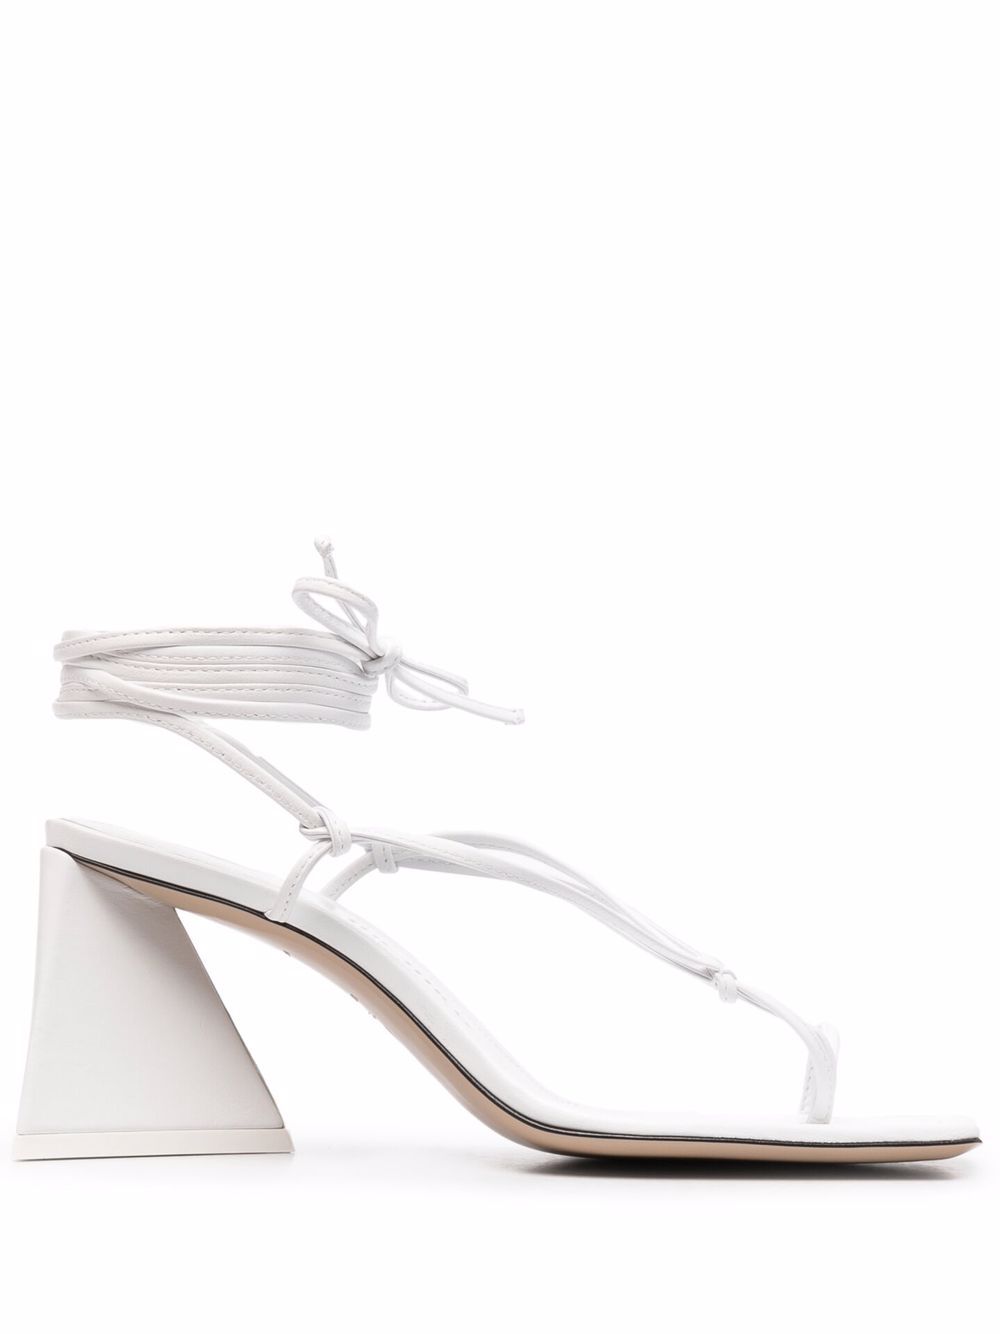 Mona Sandals дамски обувки The Attico 846751028_37